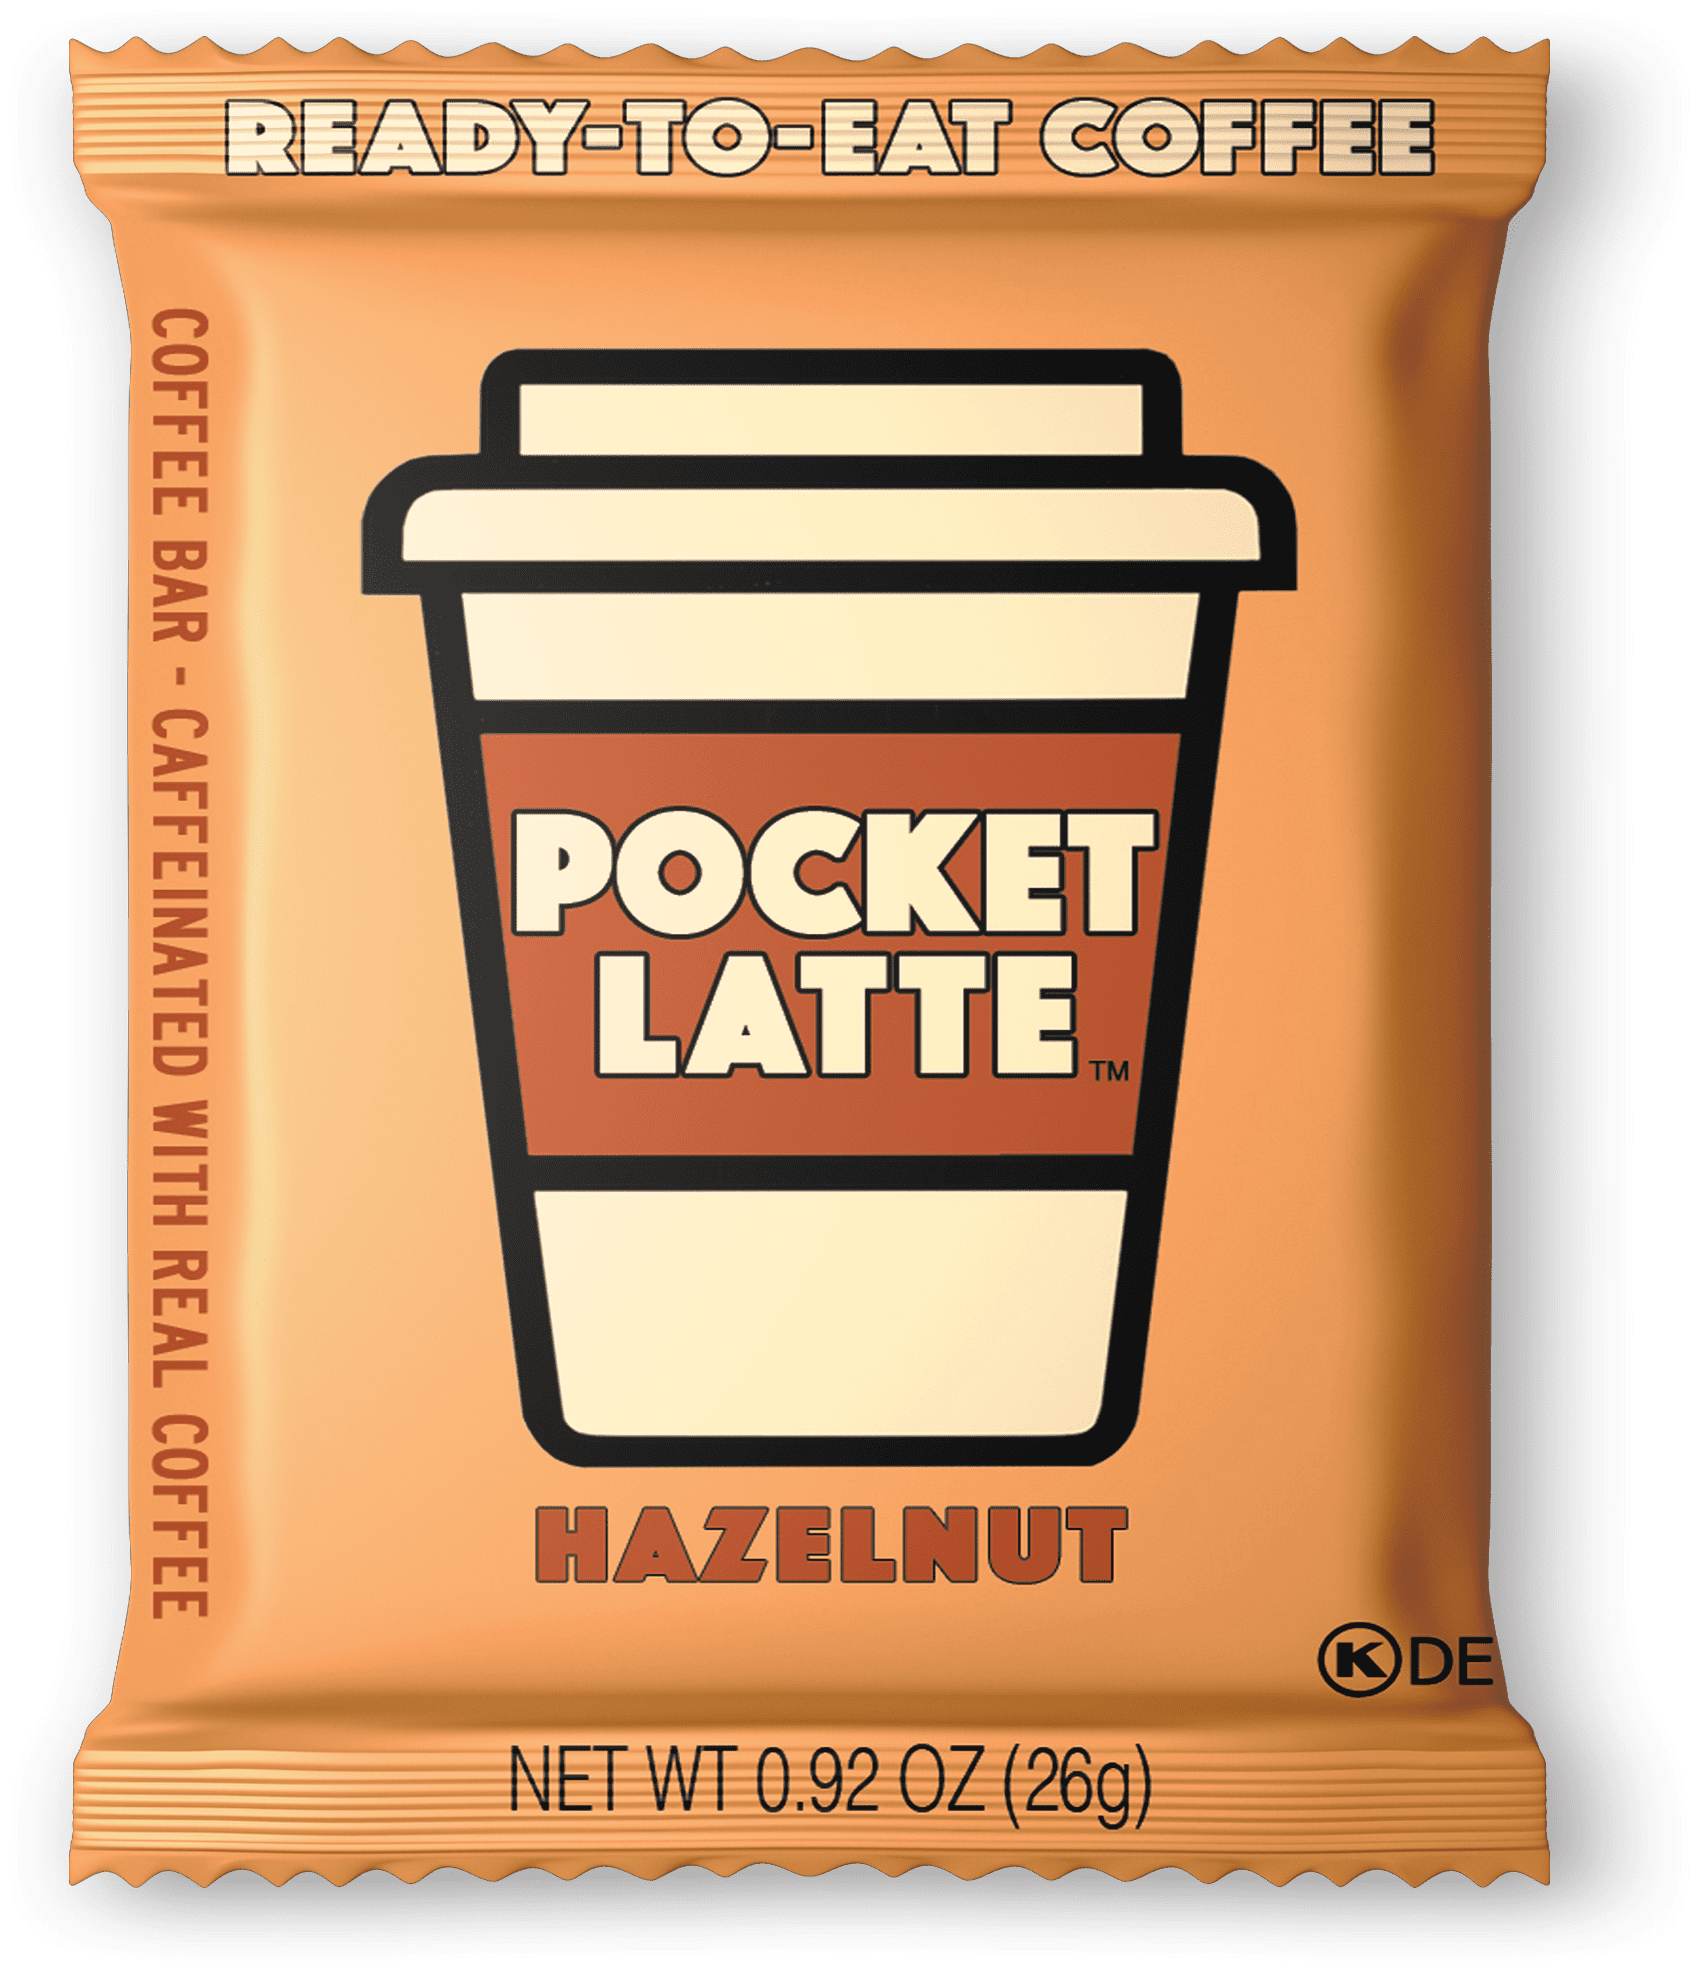 Pocket Latte ''Hazelnut'' Coffee Bar 8 innerpacks per case